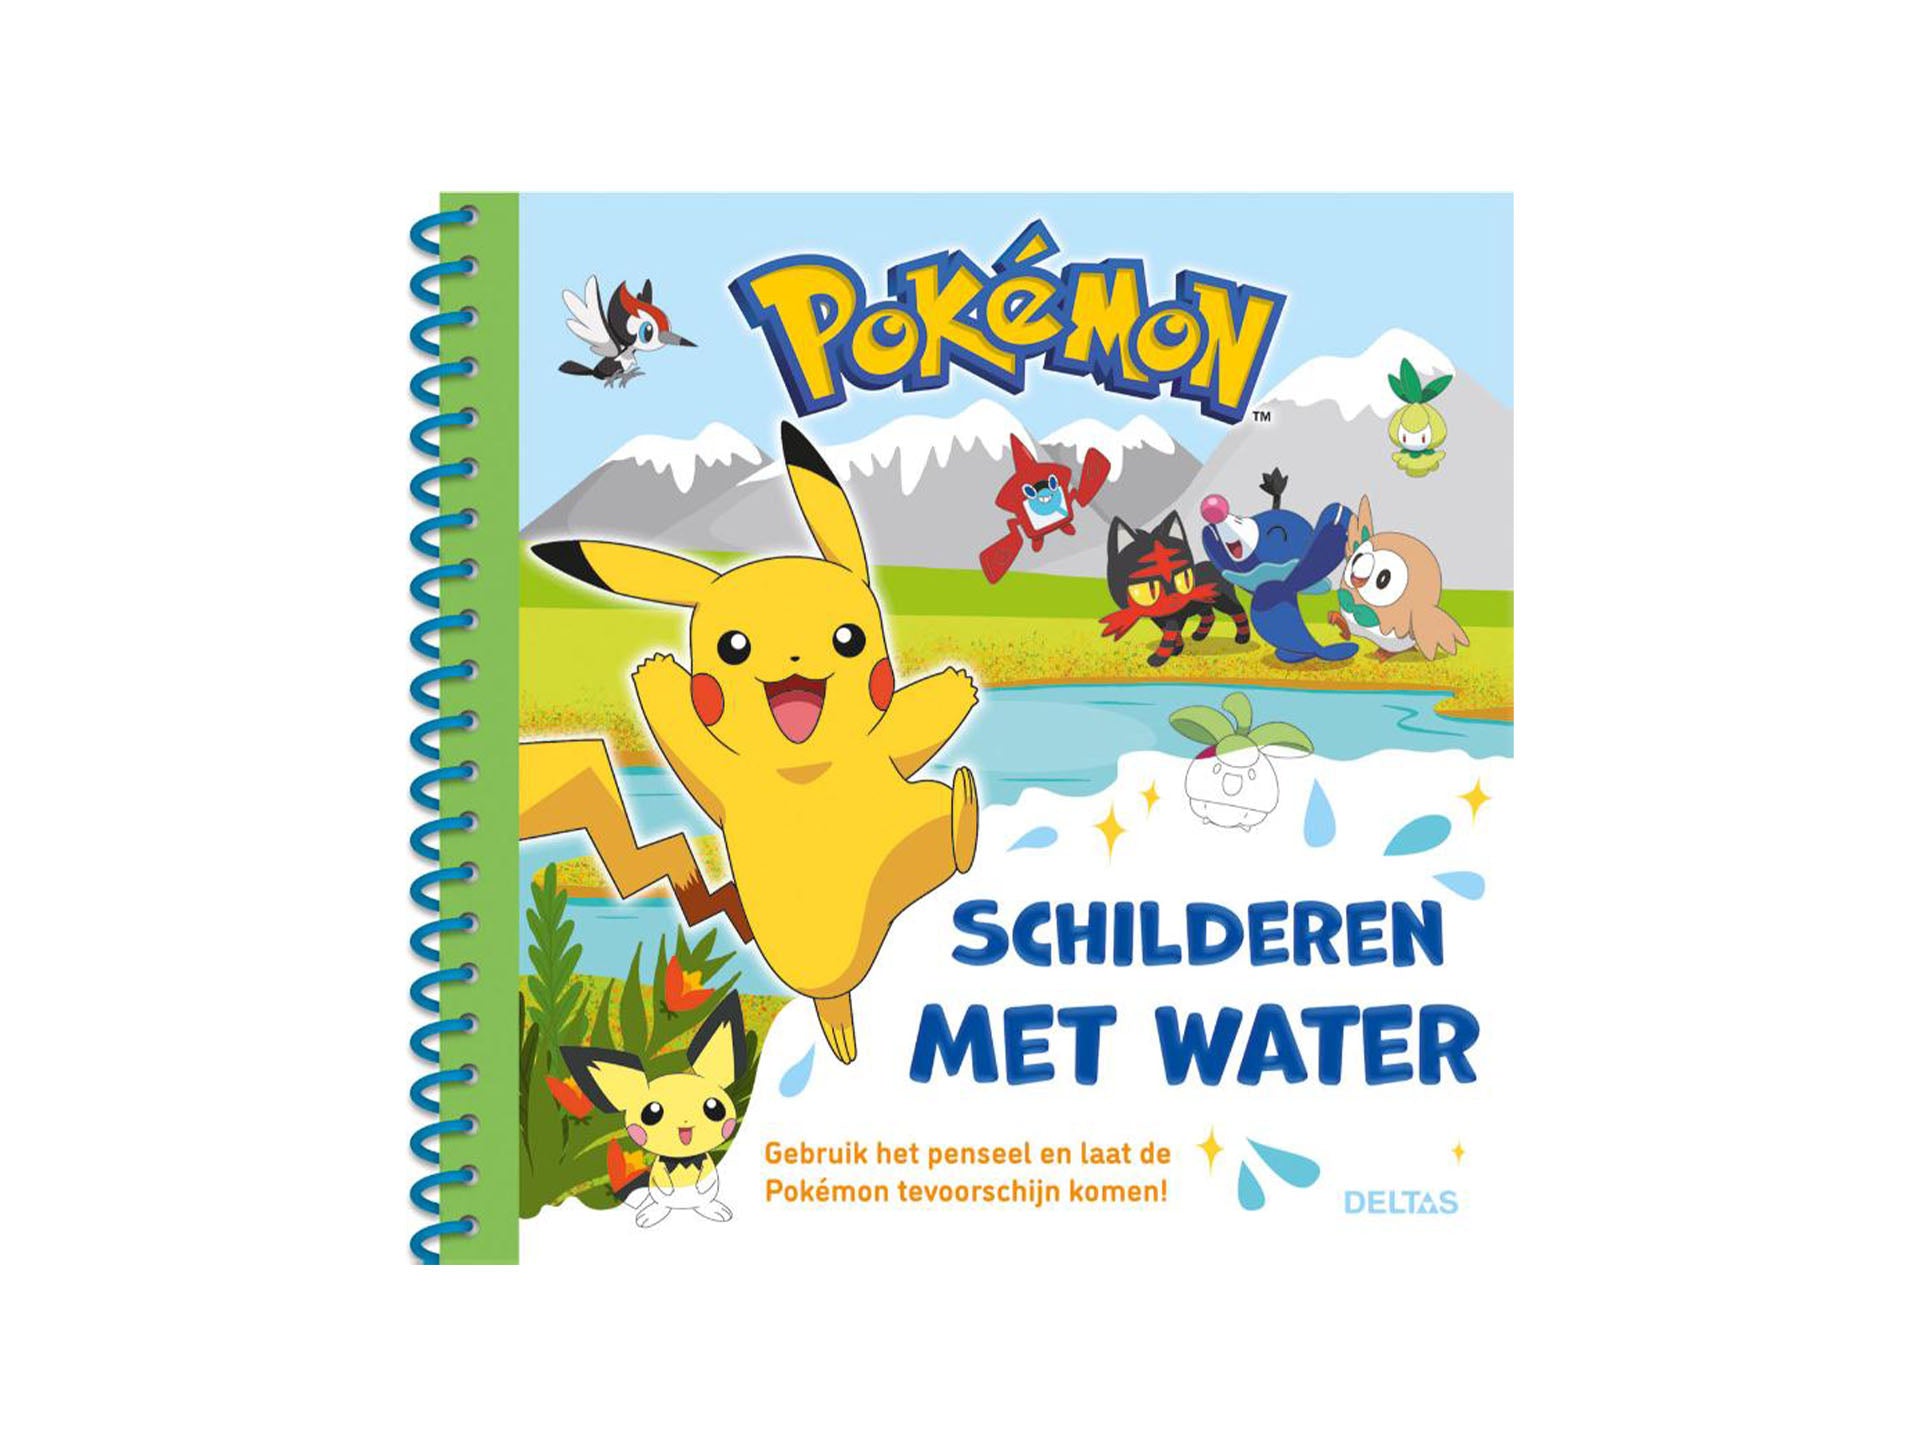 Pokémon Schilderen Met Water